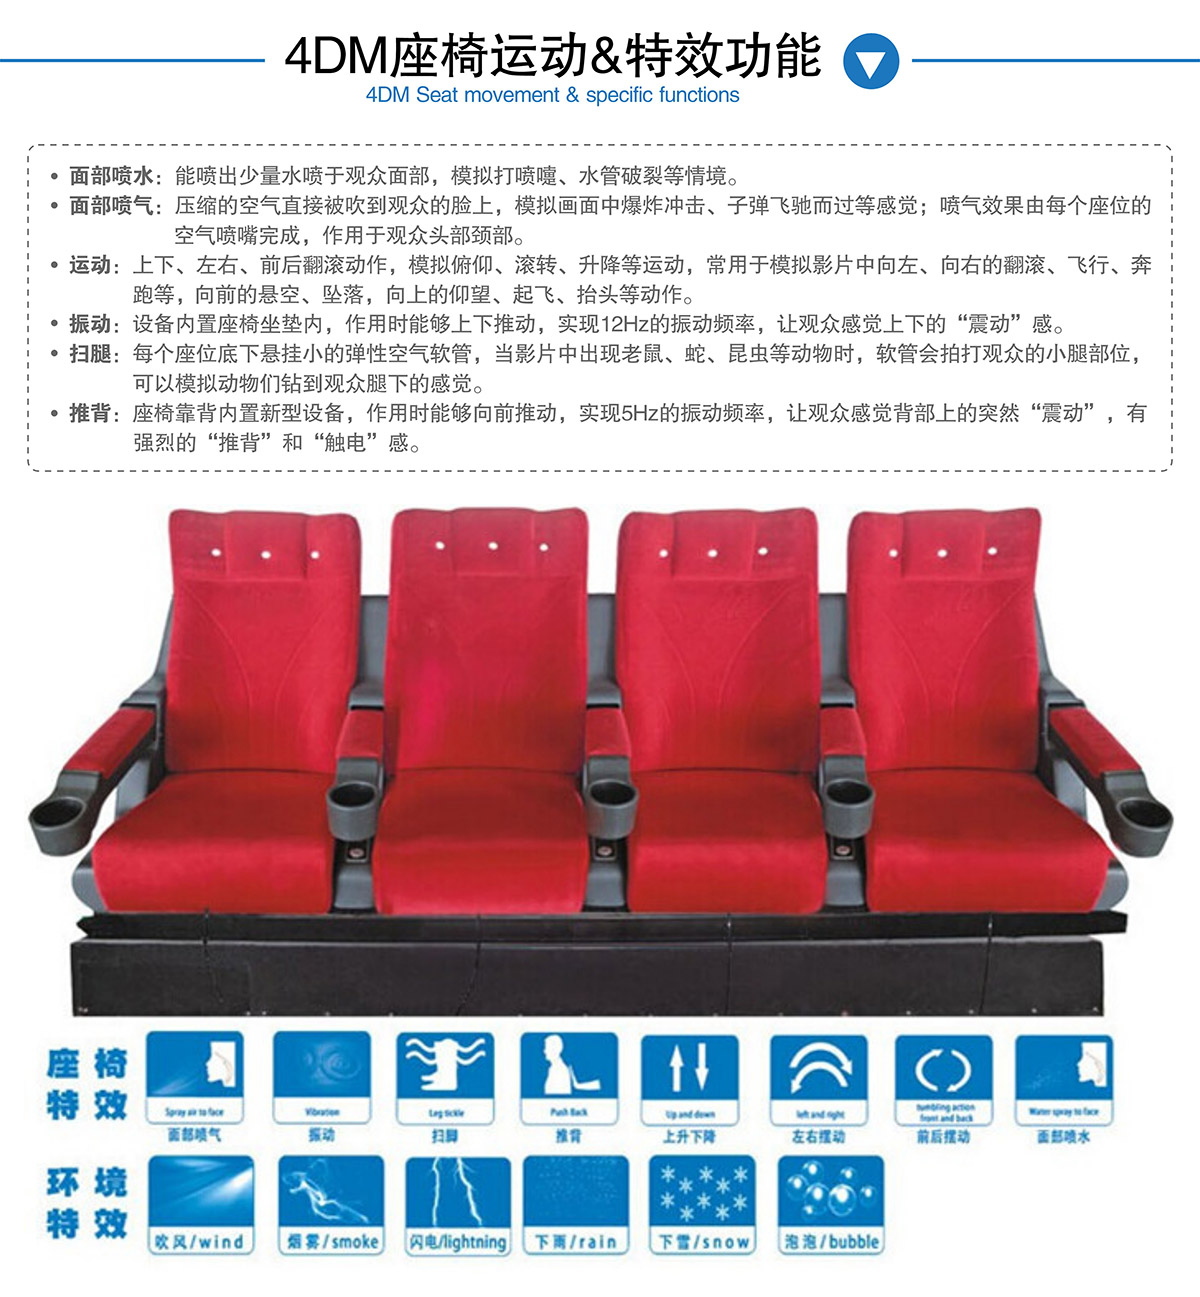 成都卓信智诚科技4DM座椅运动和特效功能.jpg